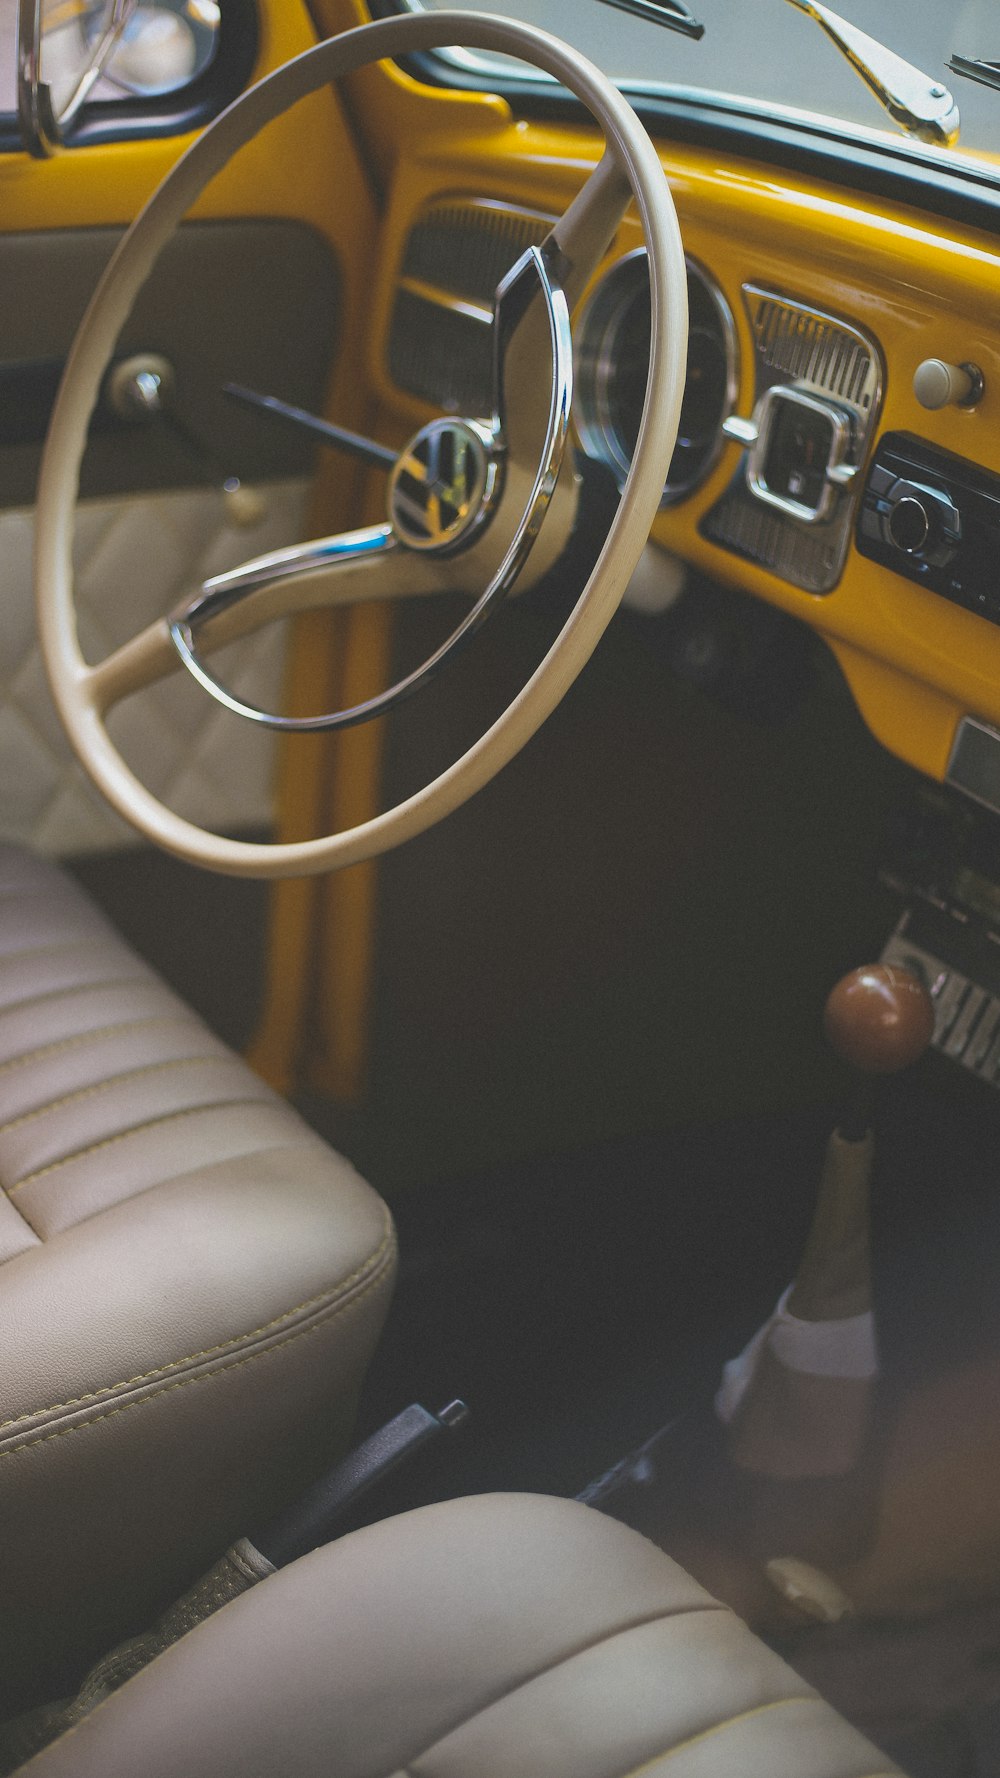 macro shot of Volkswagen steering wheel